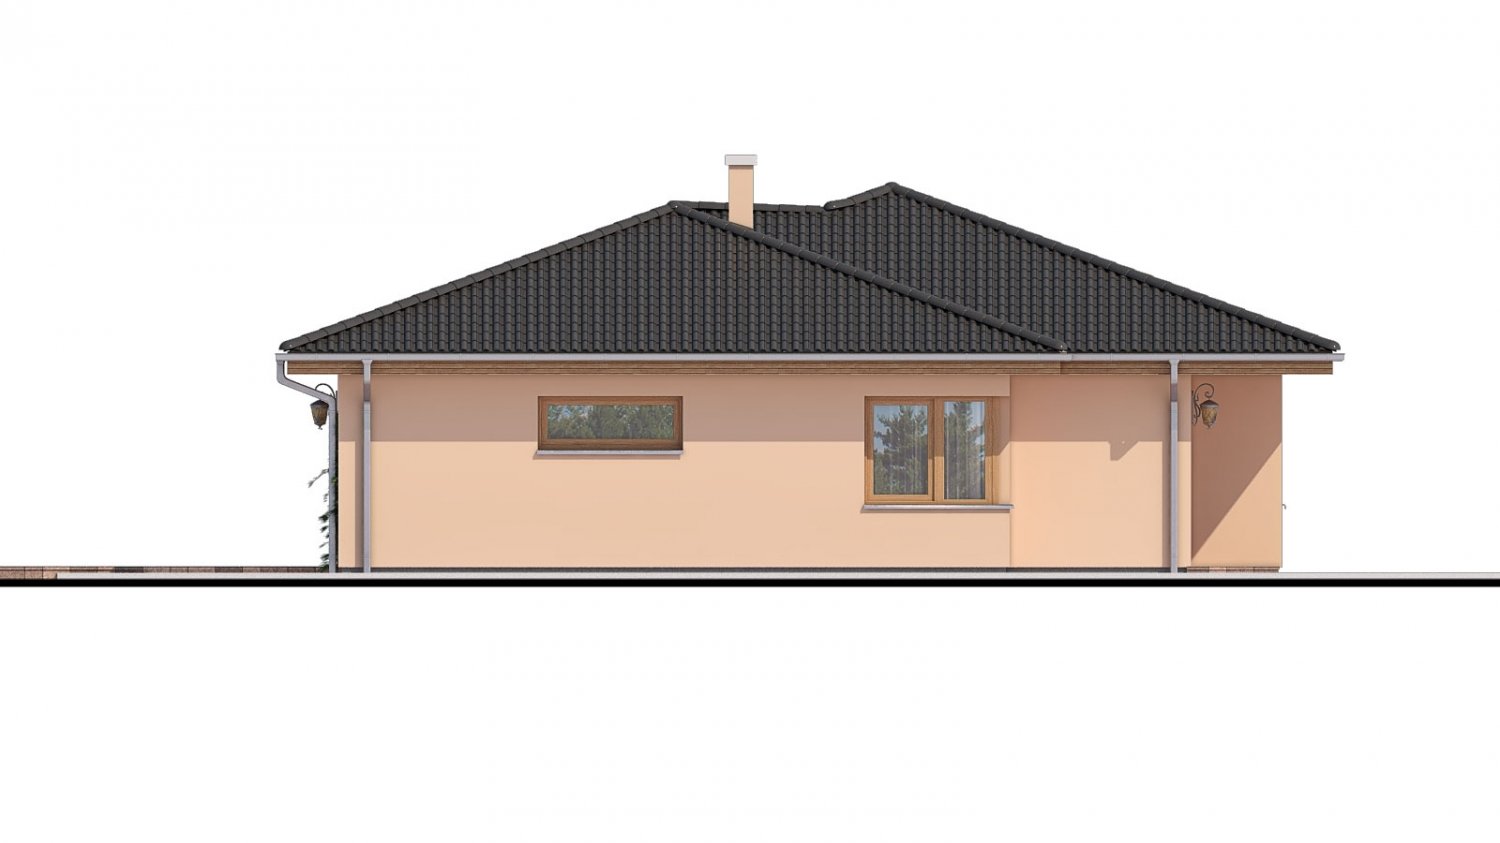 Pohľad 4. - Projekt domu s terasou. Zpracovaný iv 3d virtuální realitě.